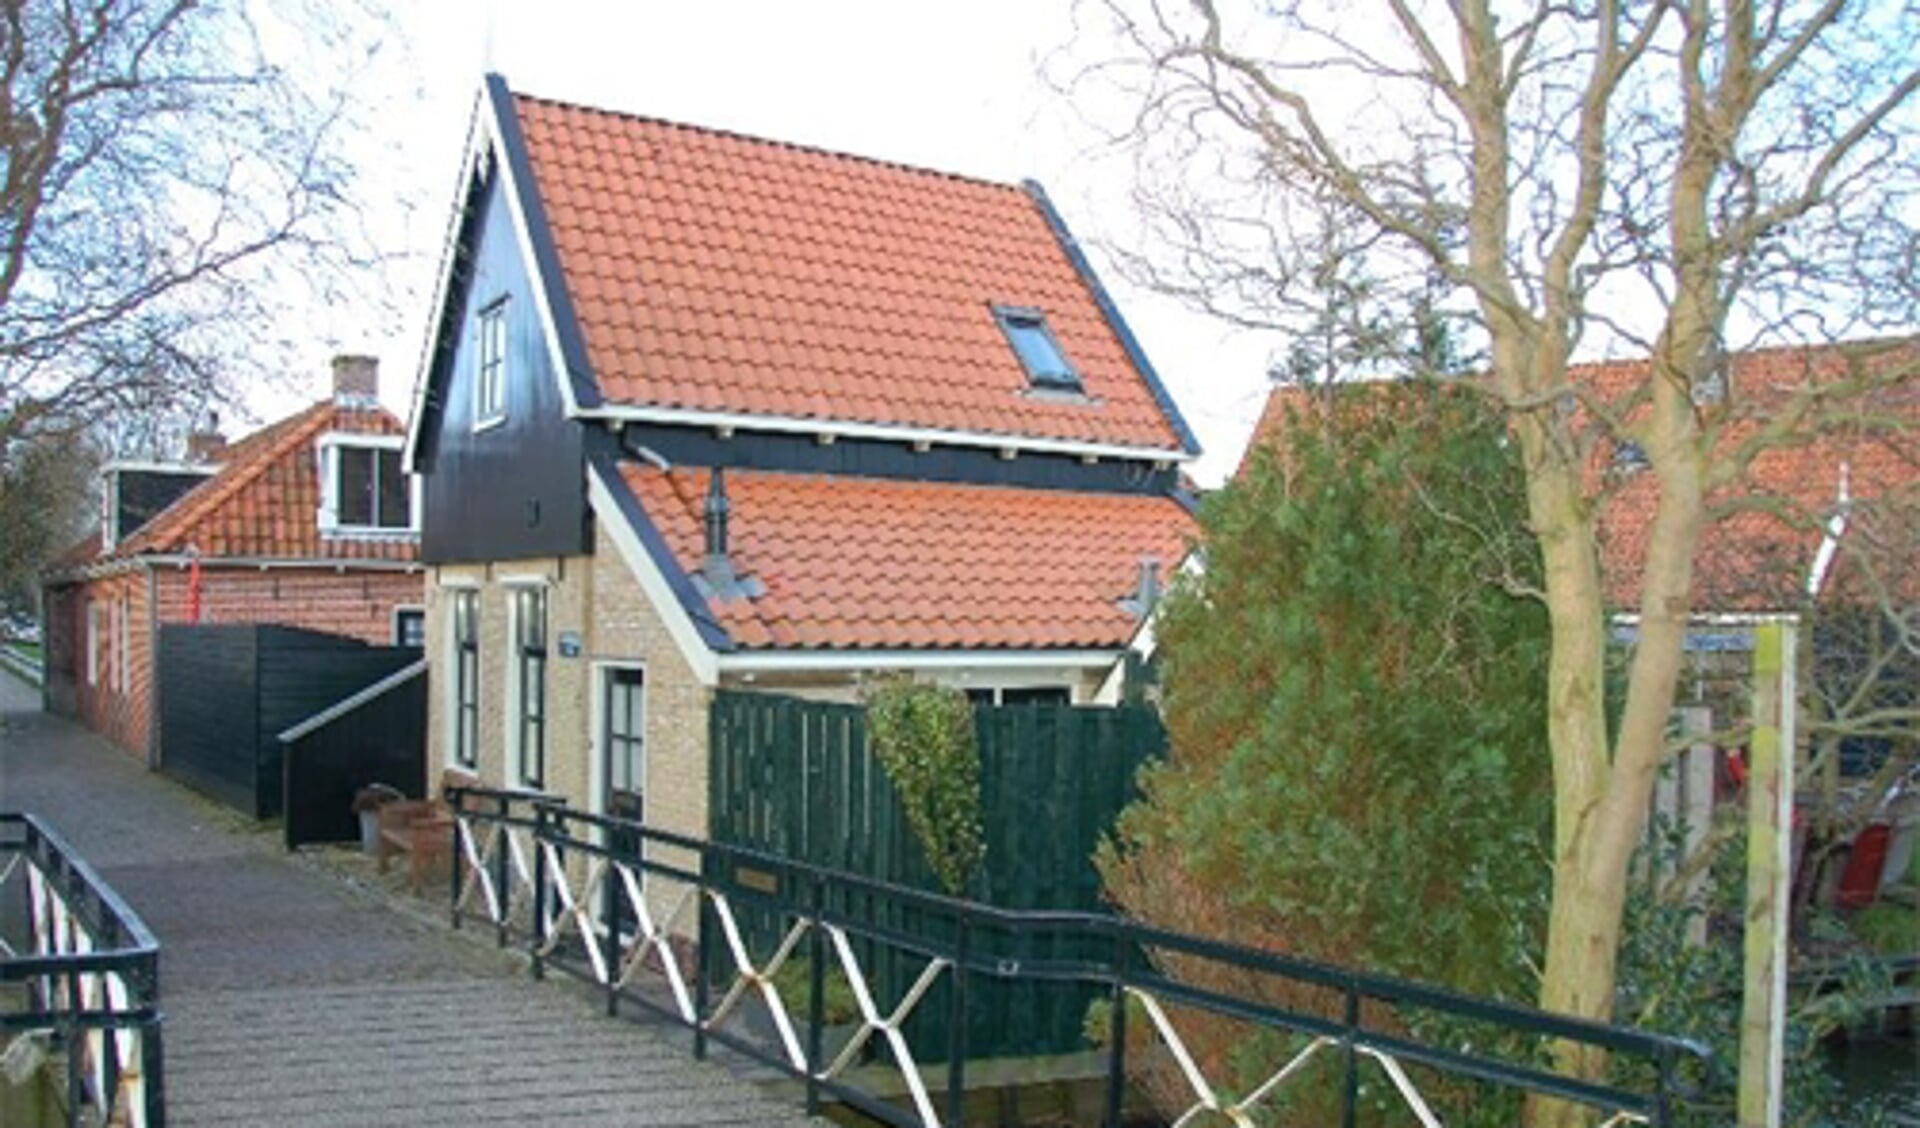 Eén van de romantische plekjes en bijpassende huizen in de stadskern van Hindeloopen.